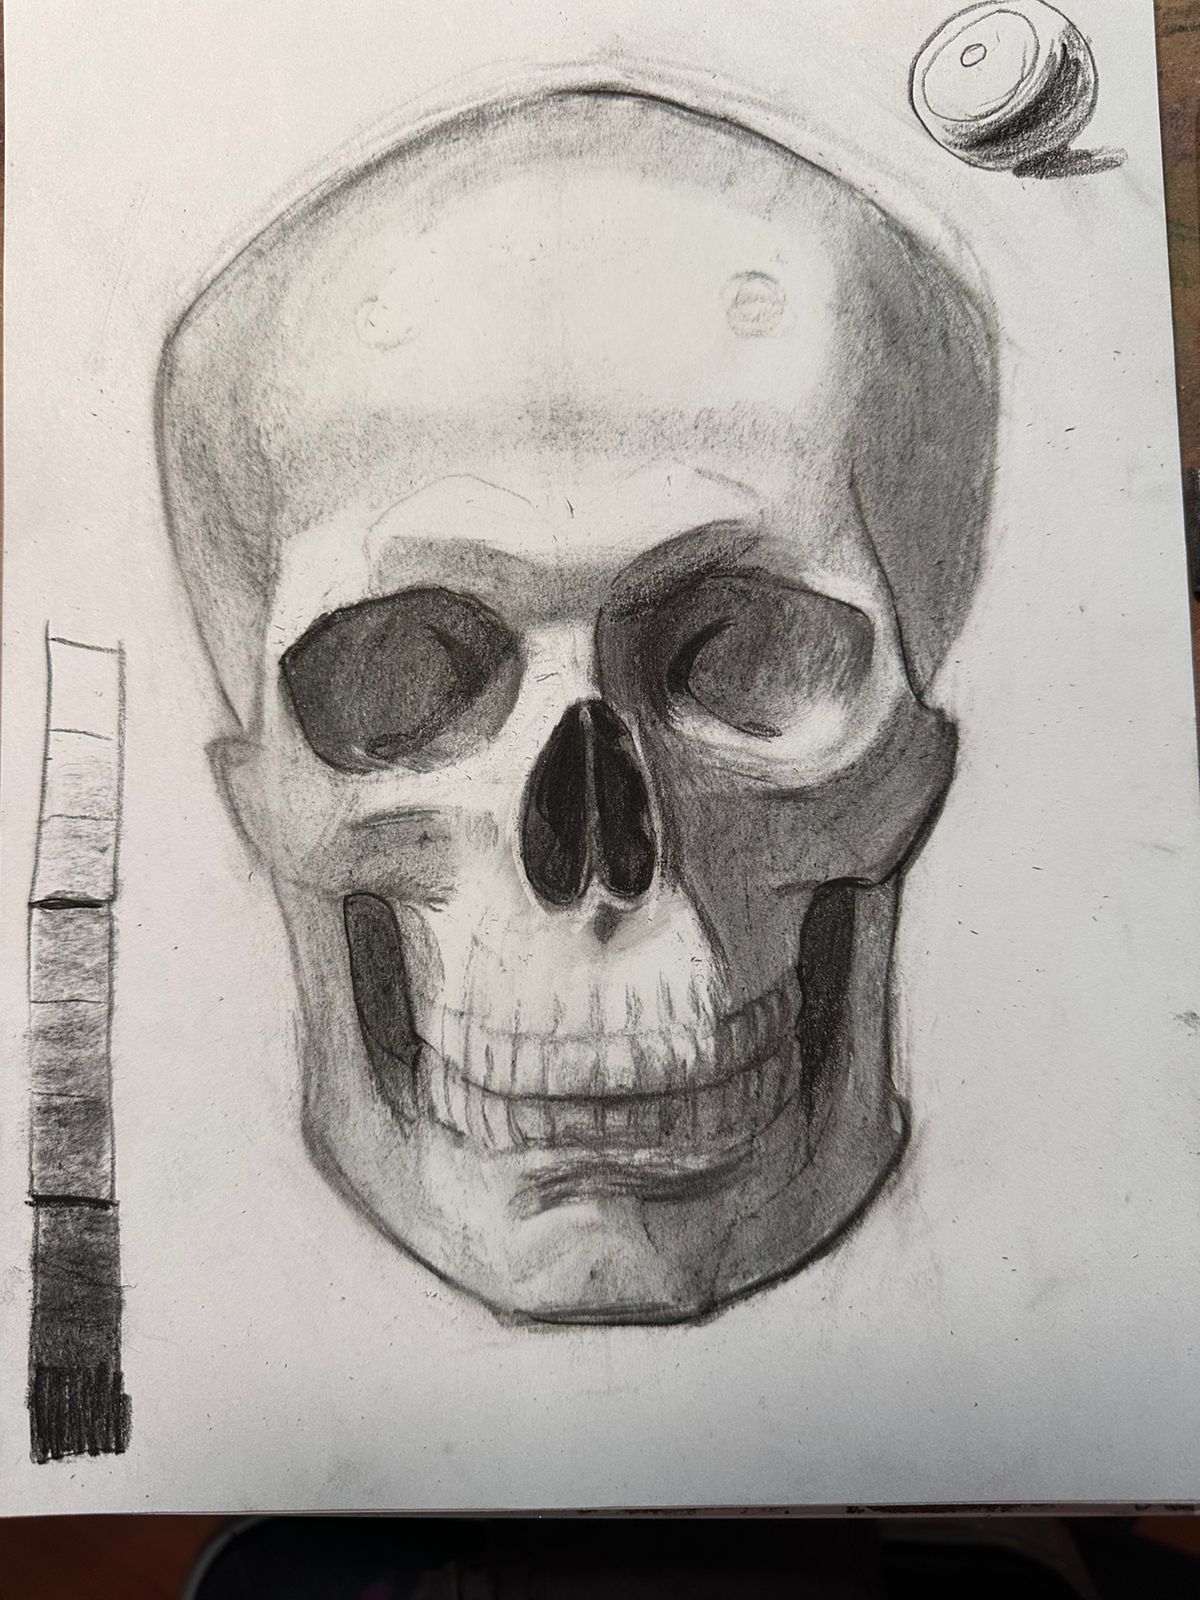 El cráneo y su anatomía, de frente (4 horas)